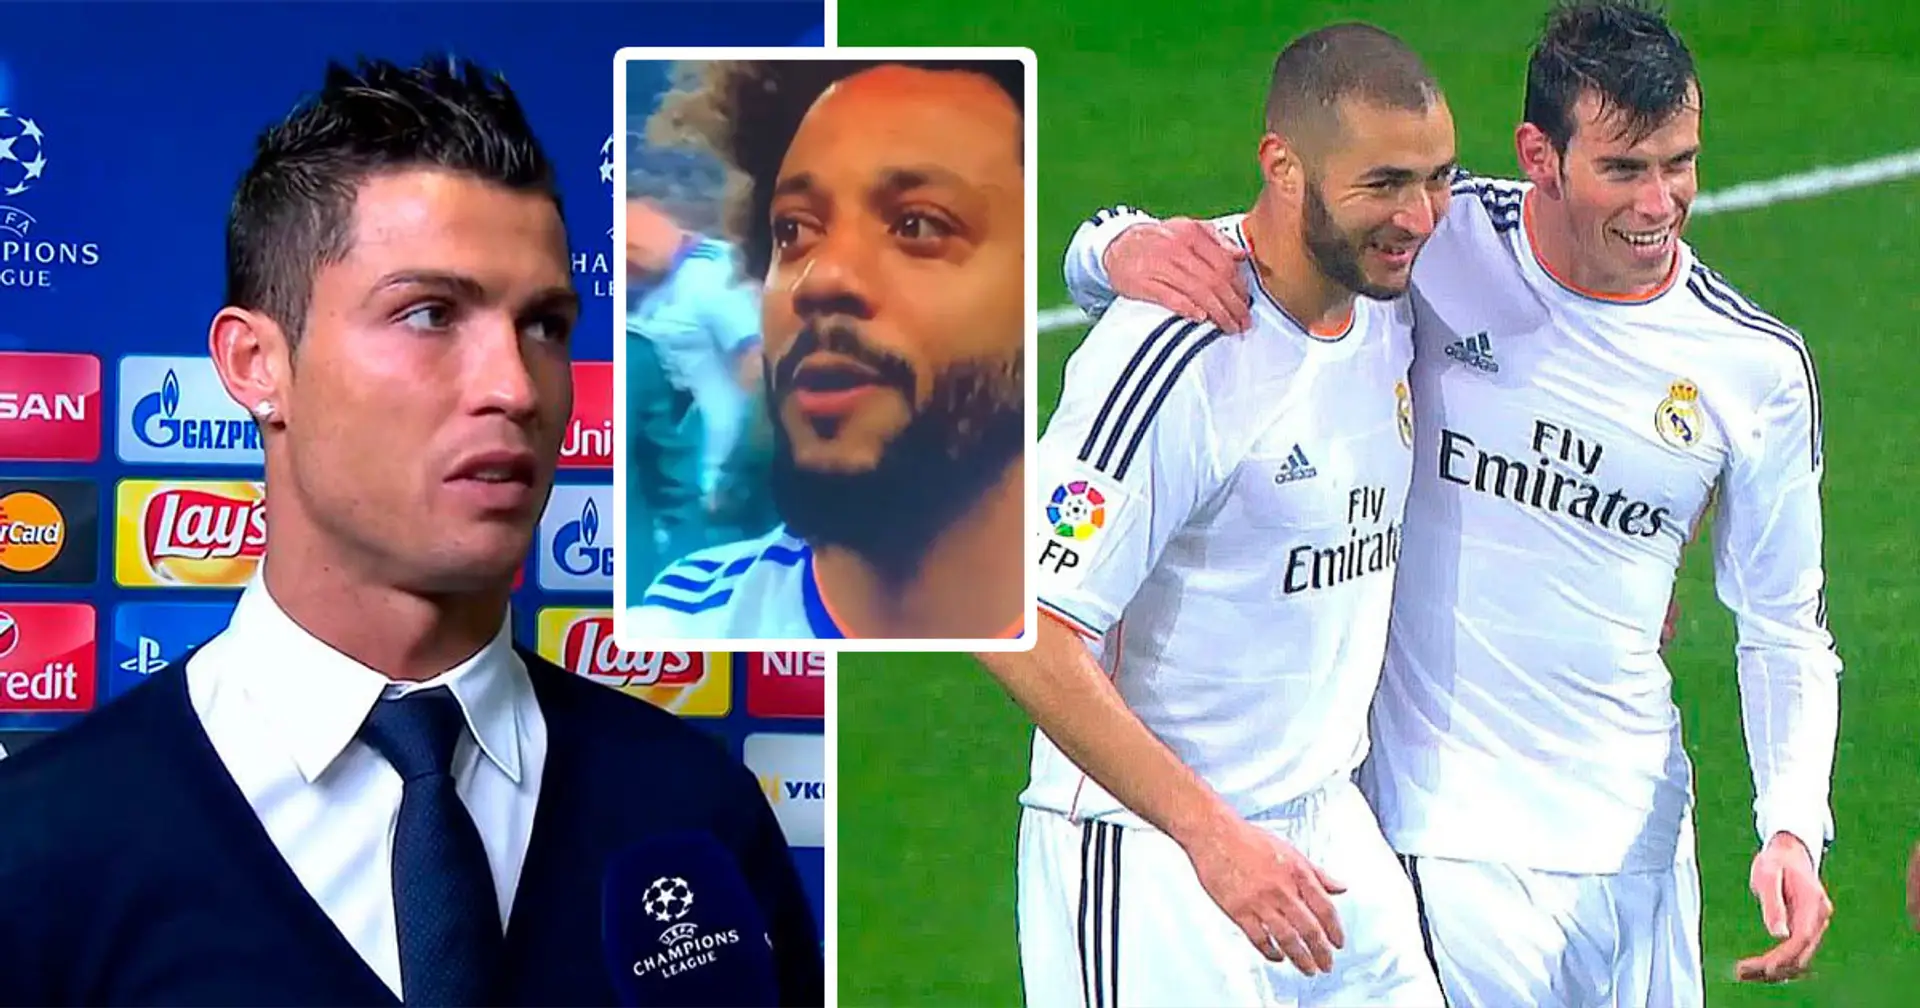 Einst hat Cristiano Ronaldo gleich 3 Teamkollegen von Real Madrid beschimpft: 'Sie sind zwar gut, aber...'